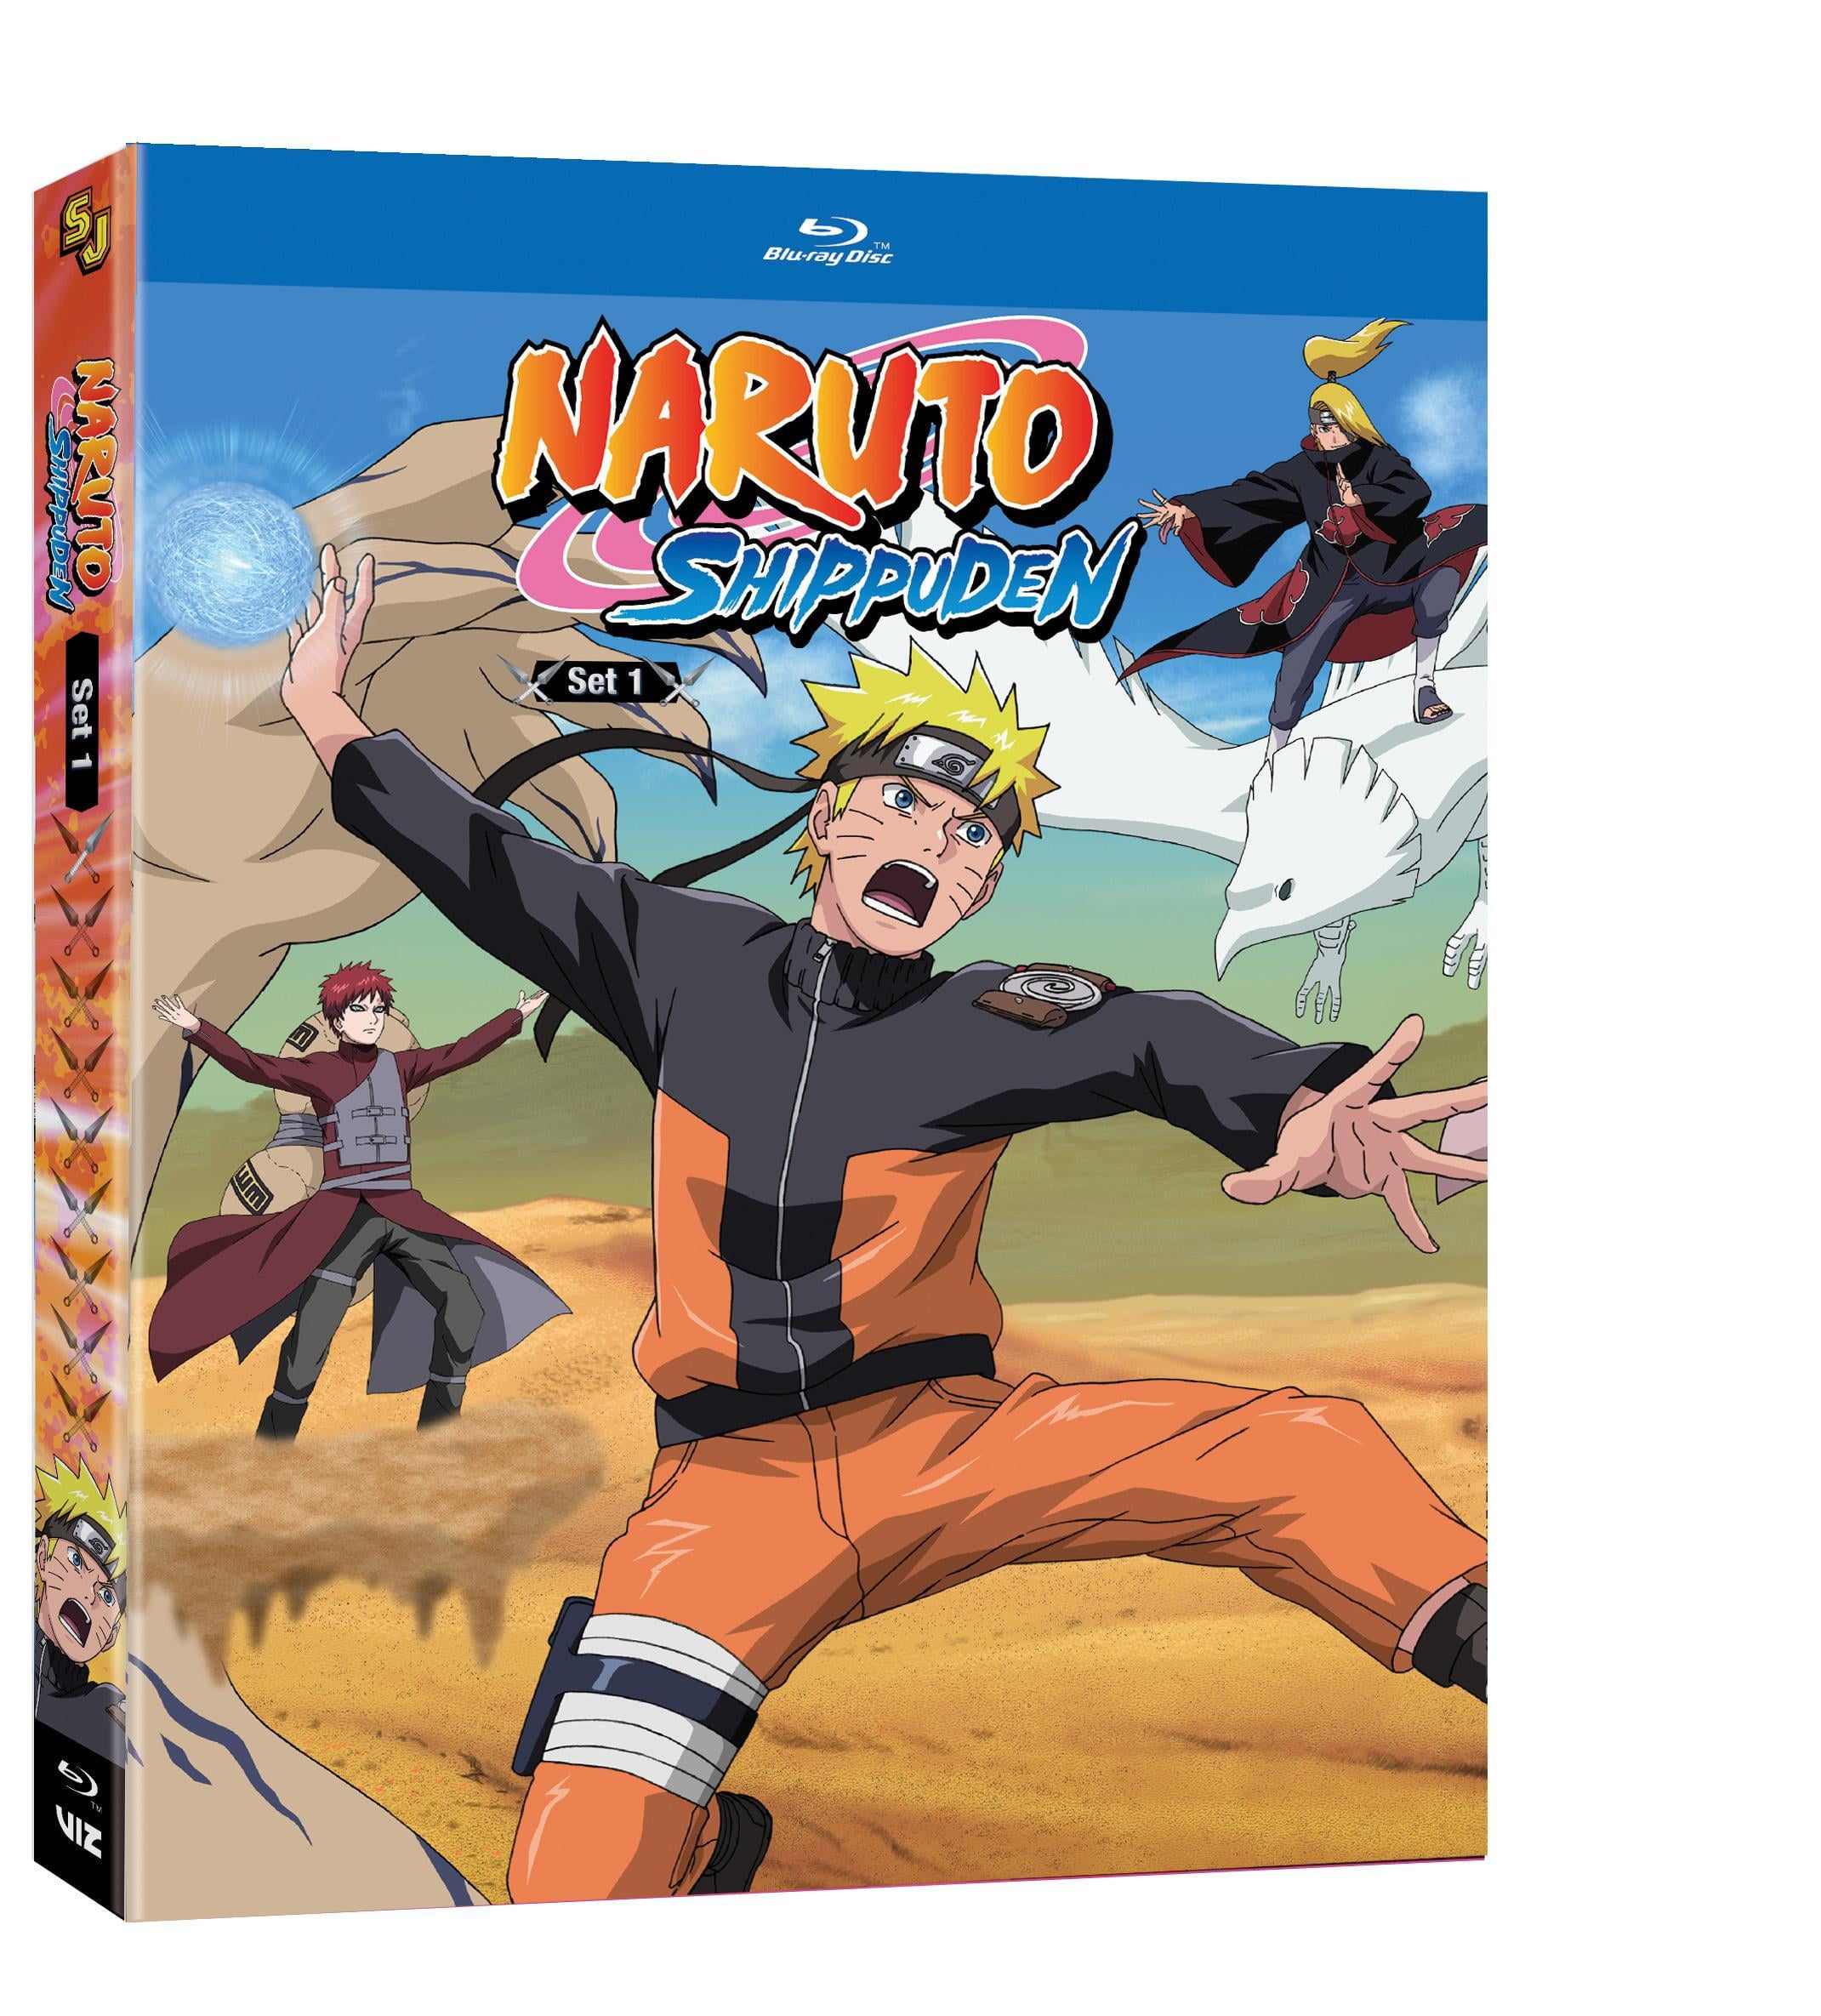 Naruto Online - Normalmente os membros da Akatsuki se organizam em